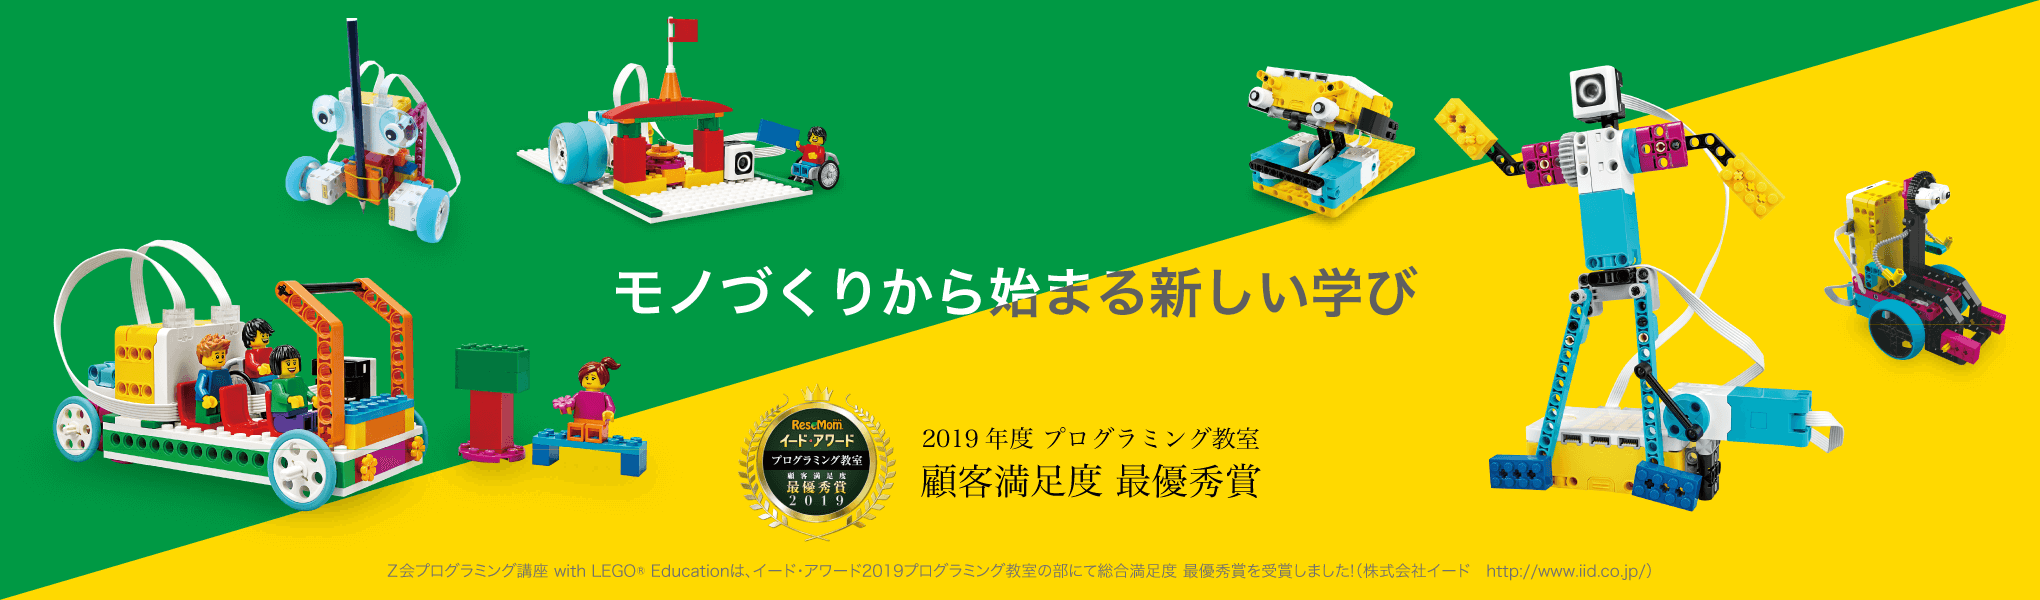 LEGO Education レゴエデュケーション プログラミング Z会 -